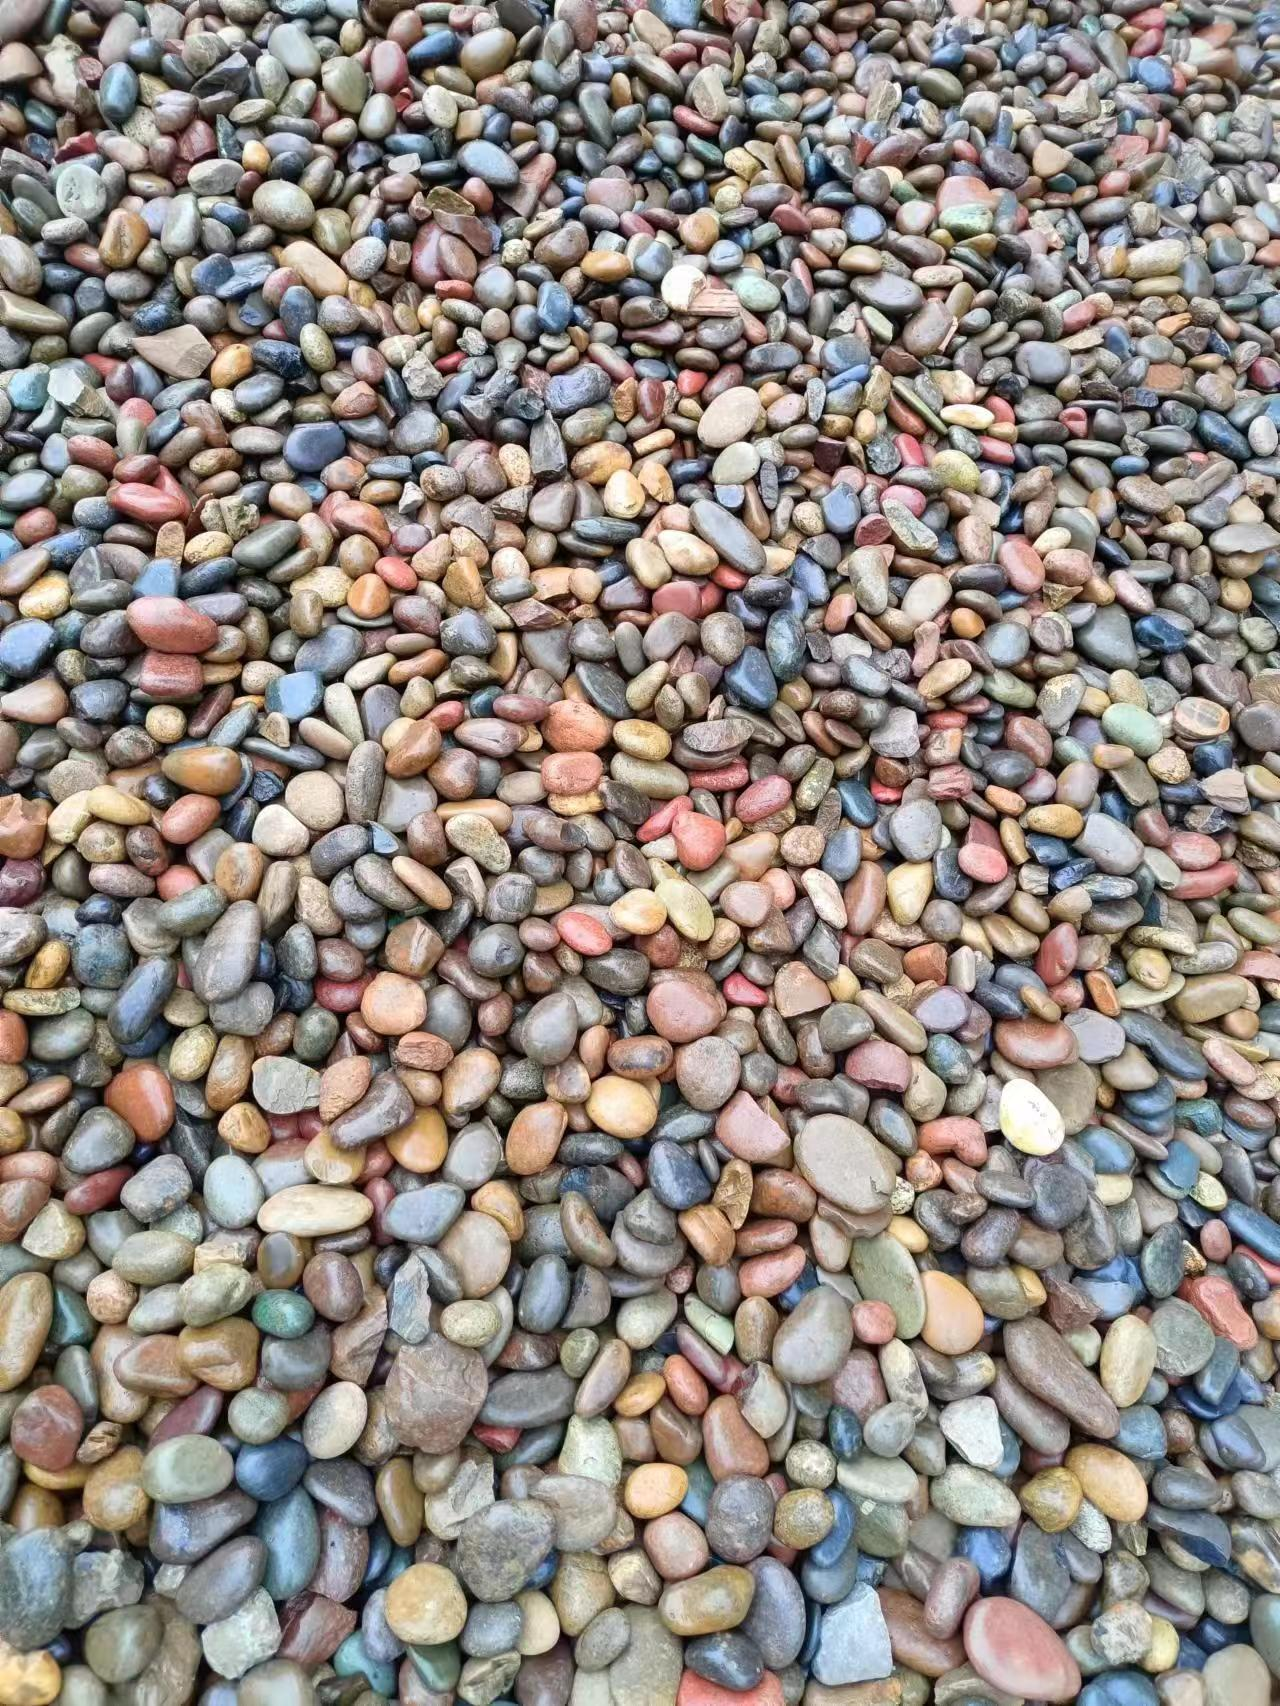 大块鹅卵石多少钱一吨-多年自营石场,品类颜色齐全   求购鹅卵石  重庆石材厂家